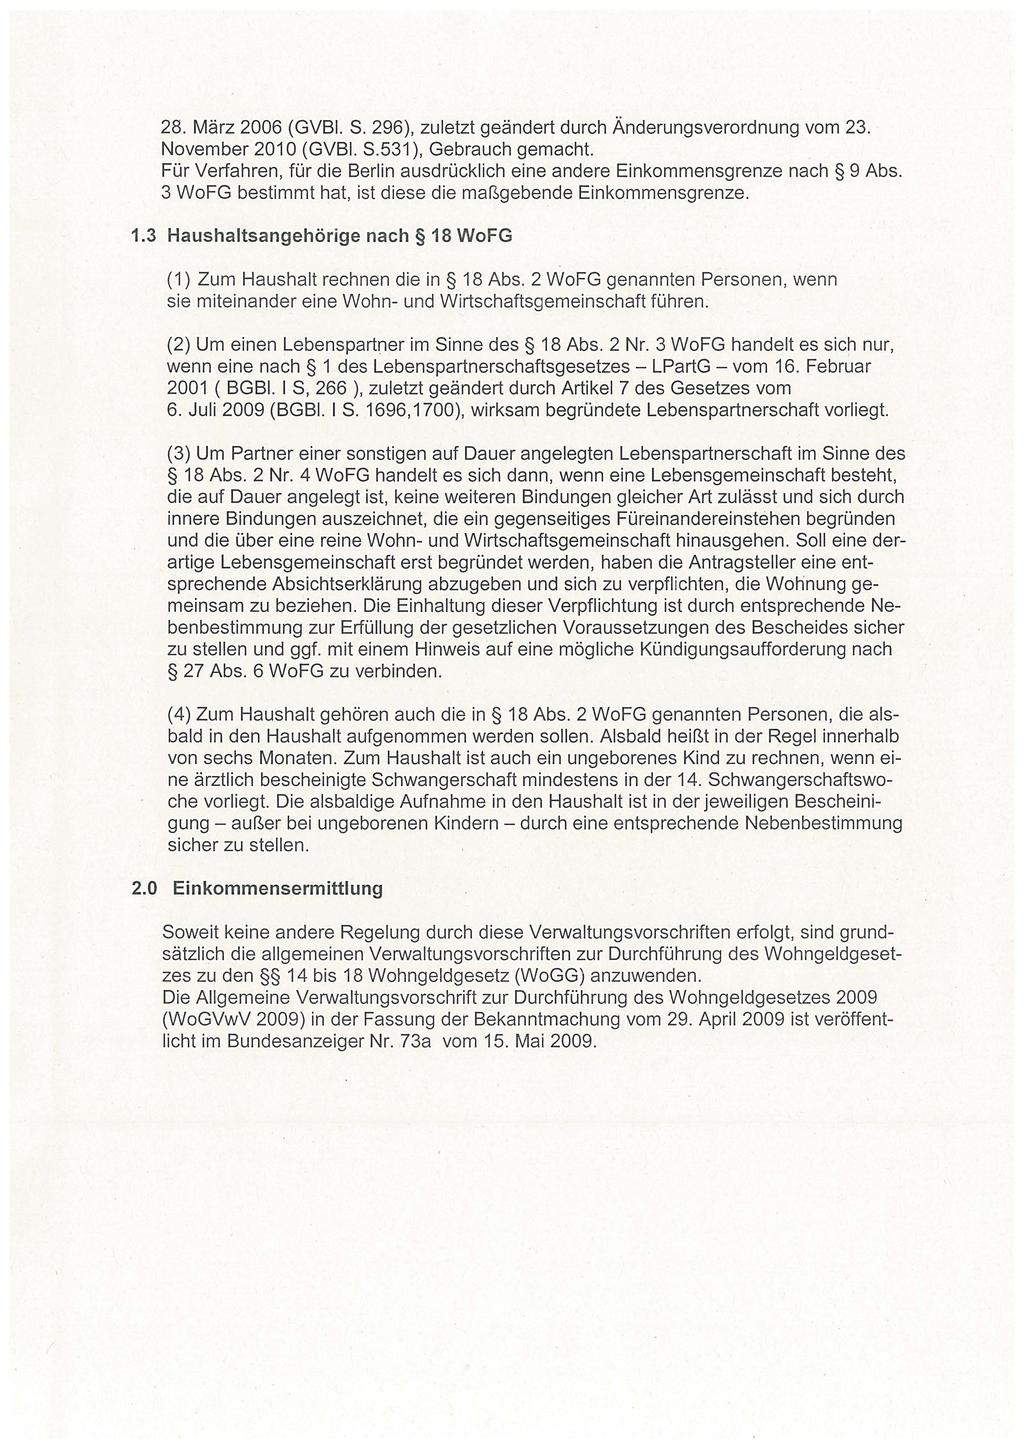 28. März 2006 (GVBI. S. 296), zuletzt geändert durch Änderungsverordnung vom 23. November 2010 (GVBI. S.531), Gebrauch gemacht.